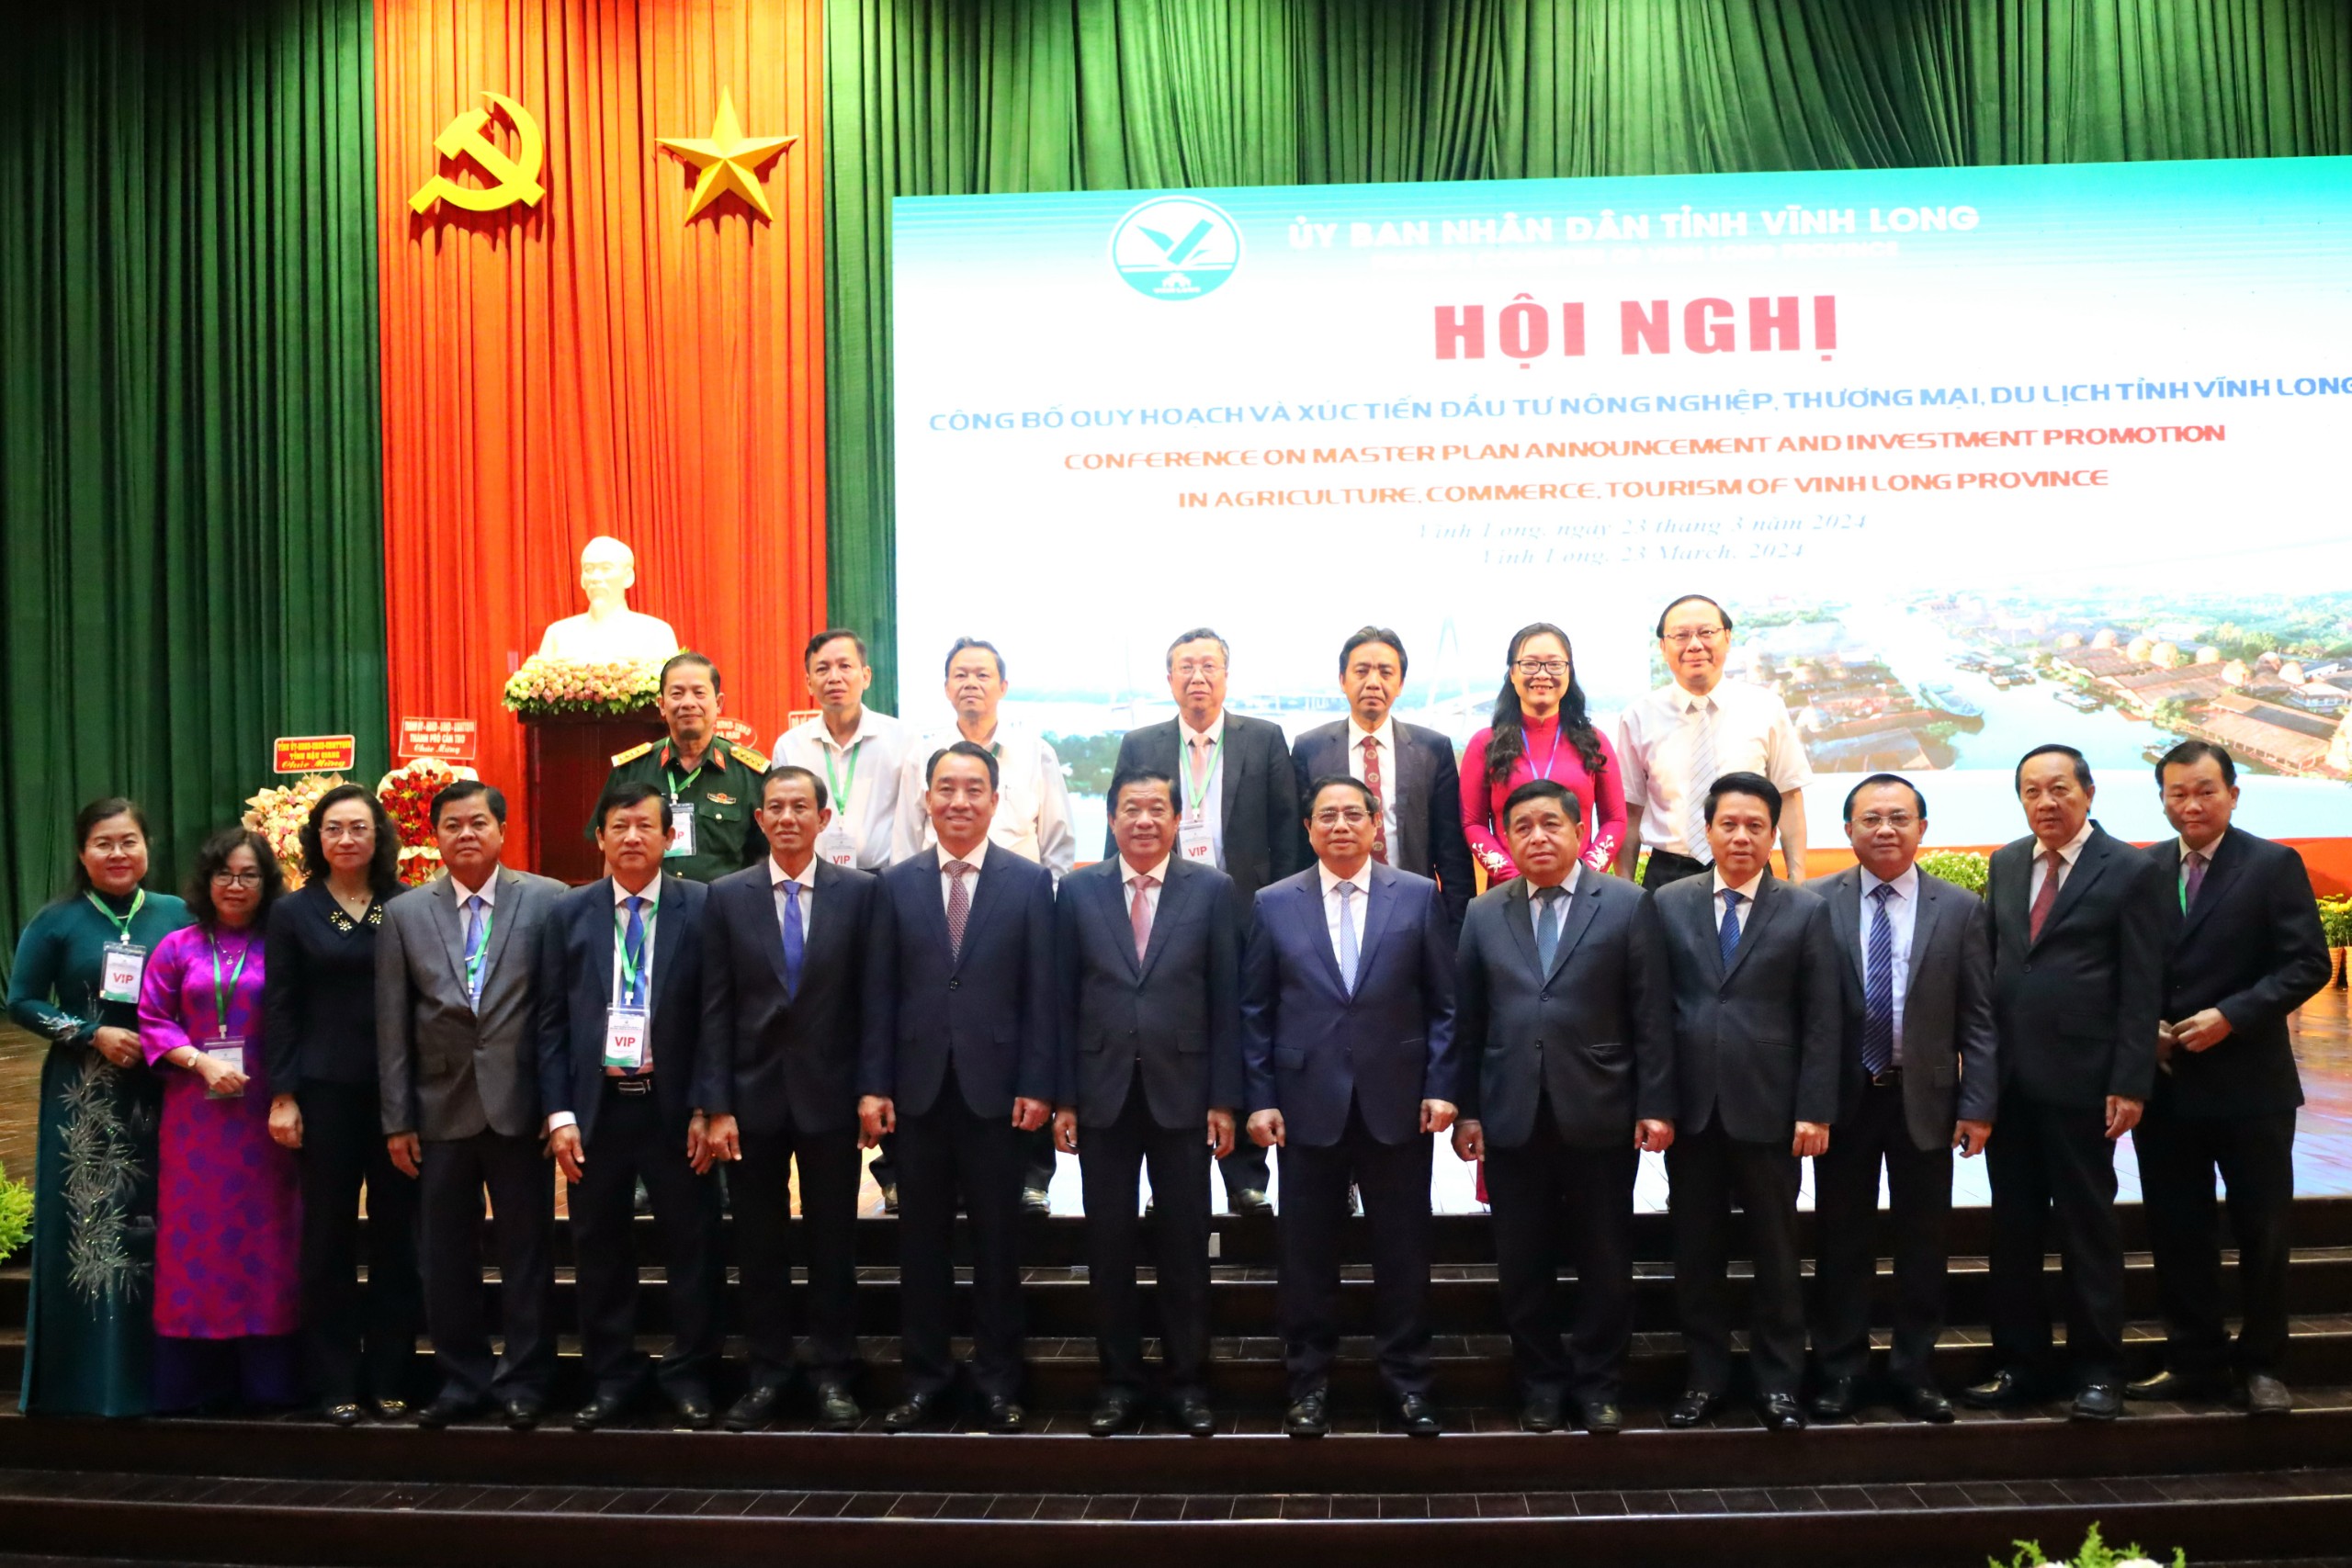 Thủ tướng Chính phủ Phạm Minh Chính chụp hình lưu niệm cùng các đại biểu tại hội nghị.